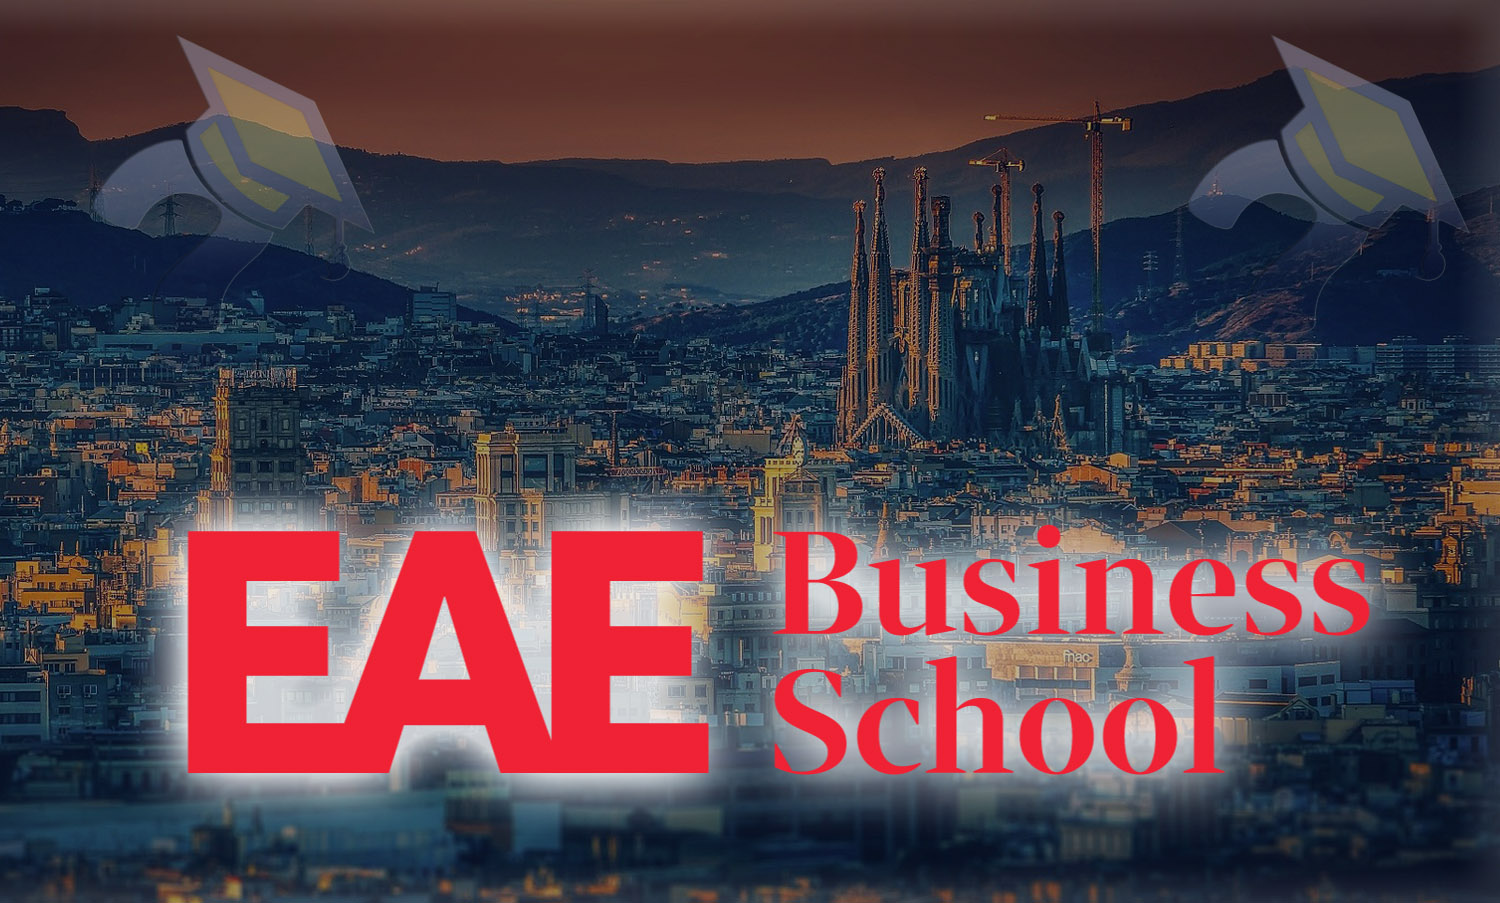 EAE Business School